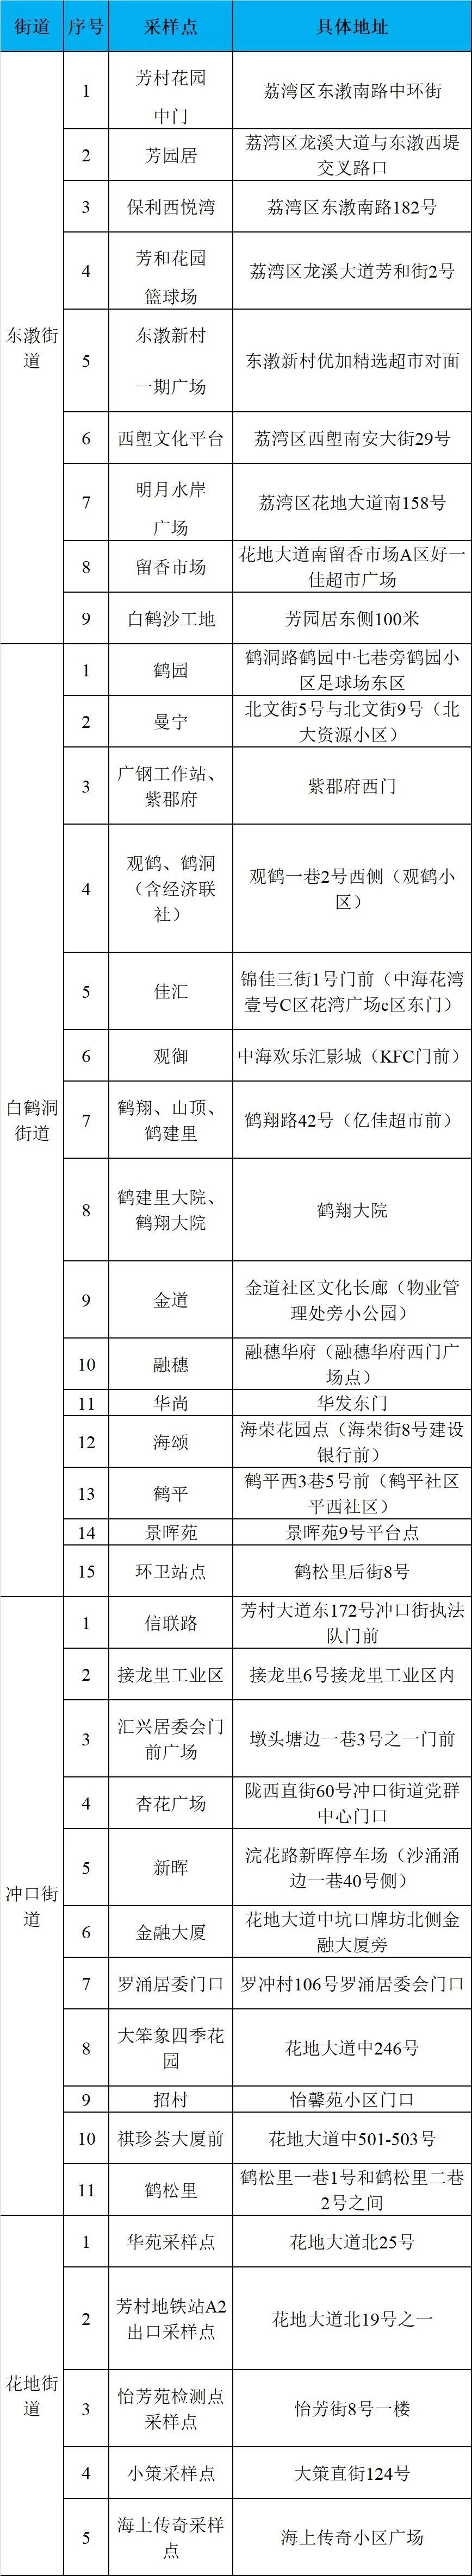 广州荔湾区东漖、白鹤洞、冲口、花地街道开展区域核酸检测工作